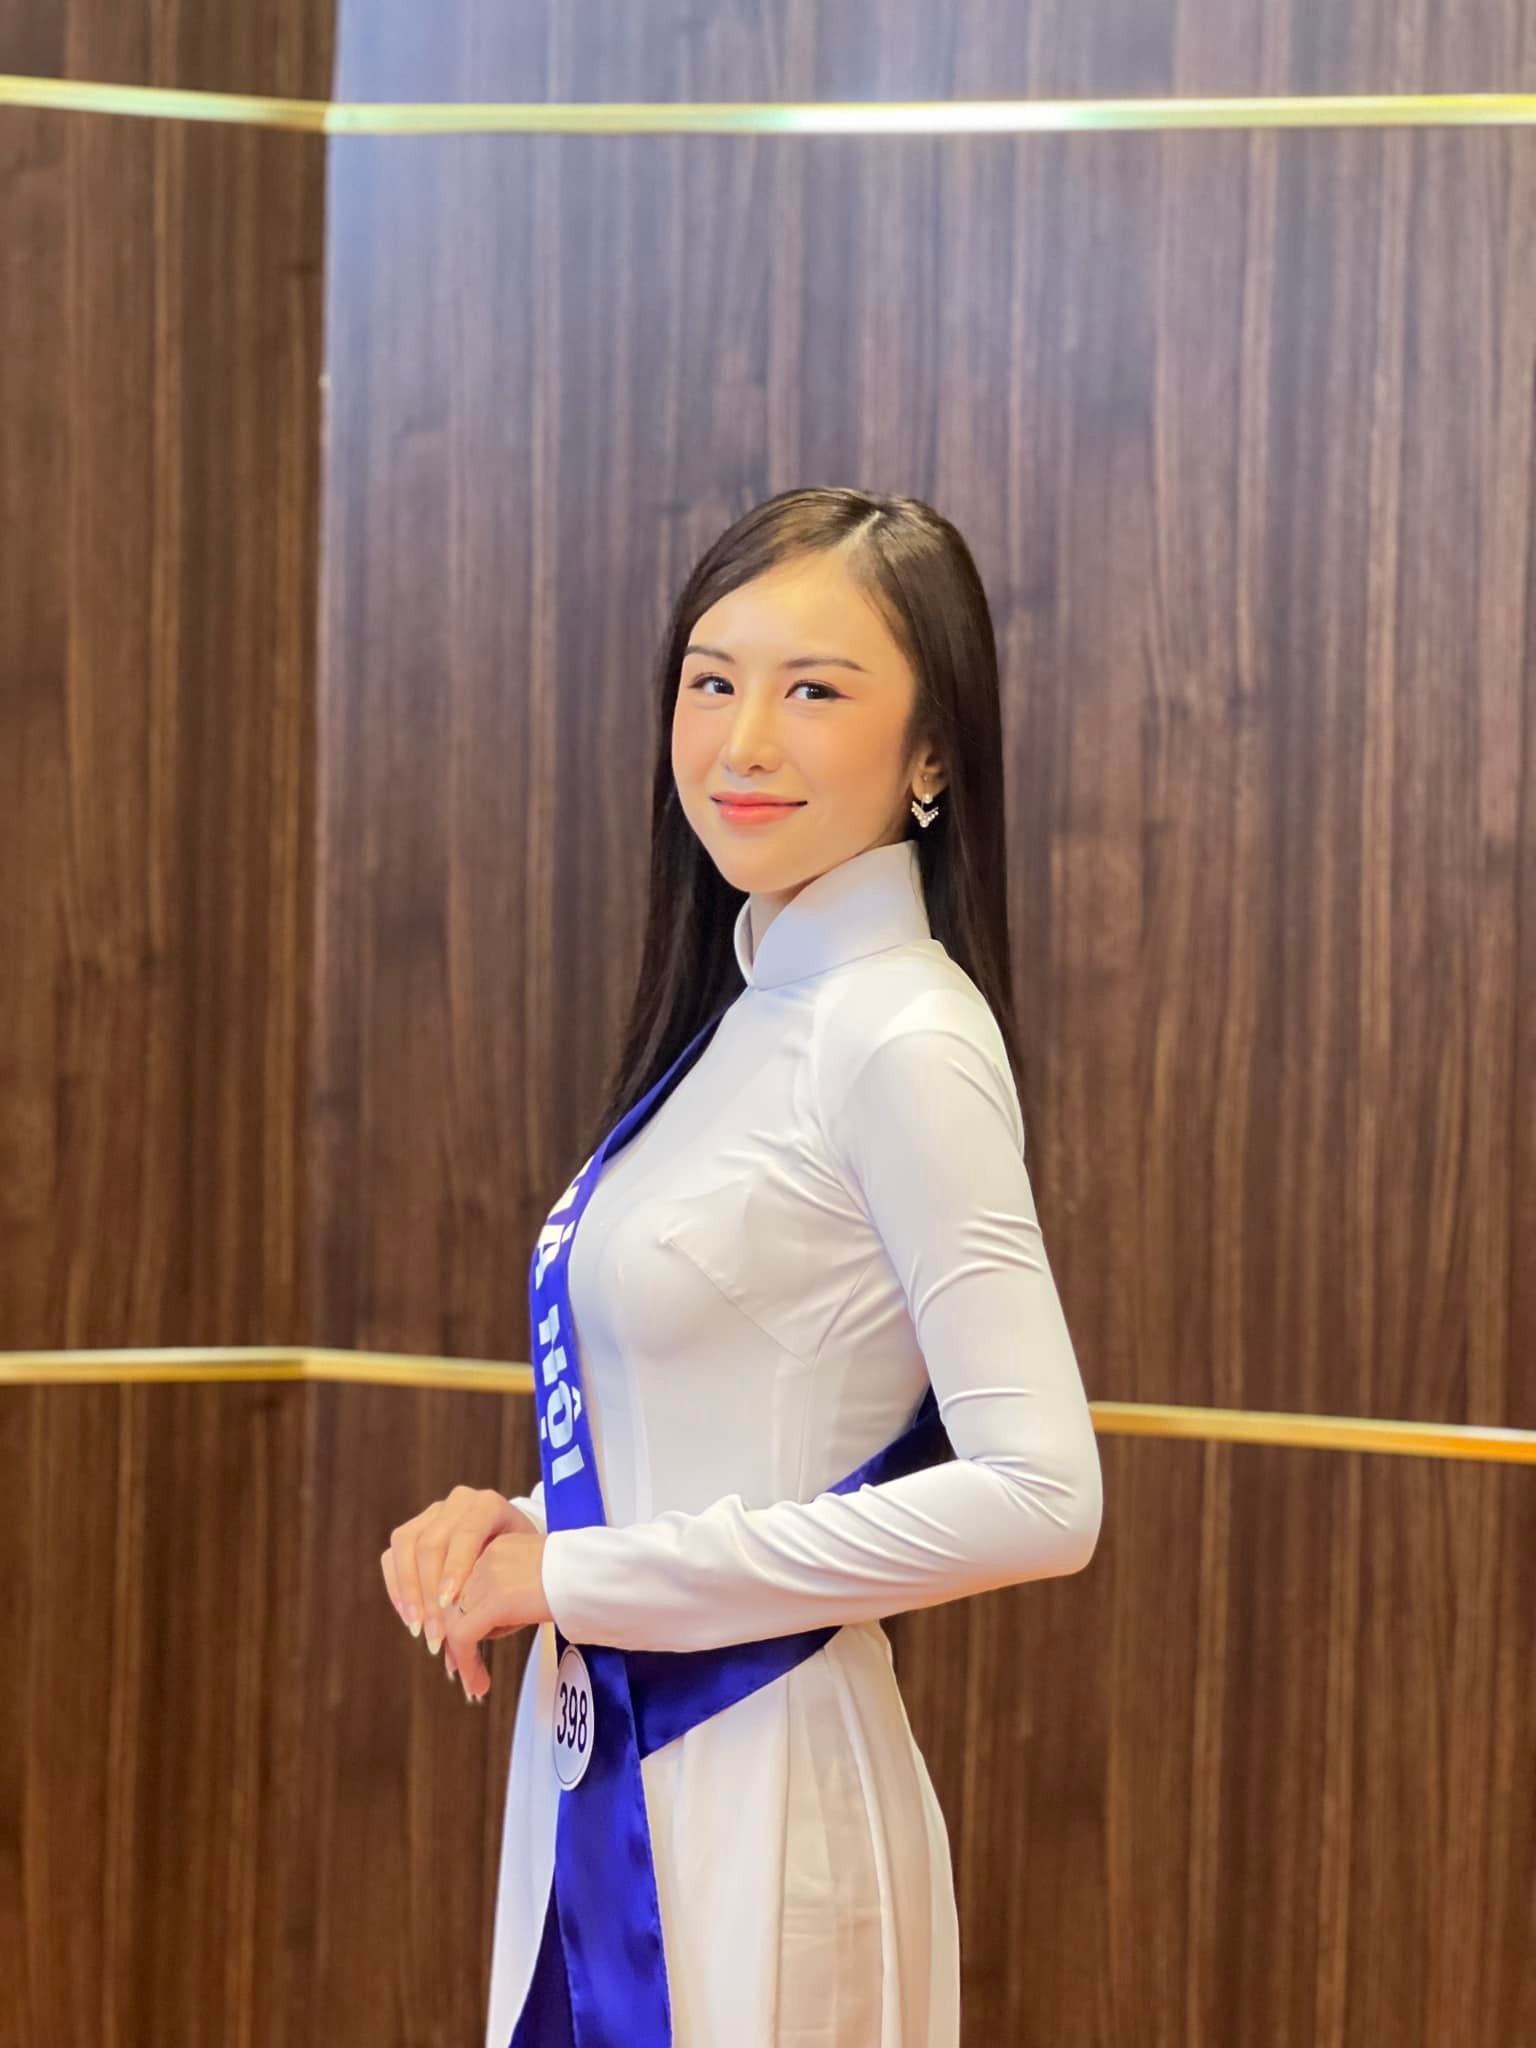 Ái nữ nhà NSND Trần Nhượng gây chú ý tại cuộc thi nhan sắc vì vẻ ngoài quá nổi trội - 3